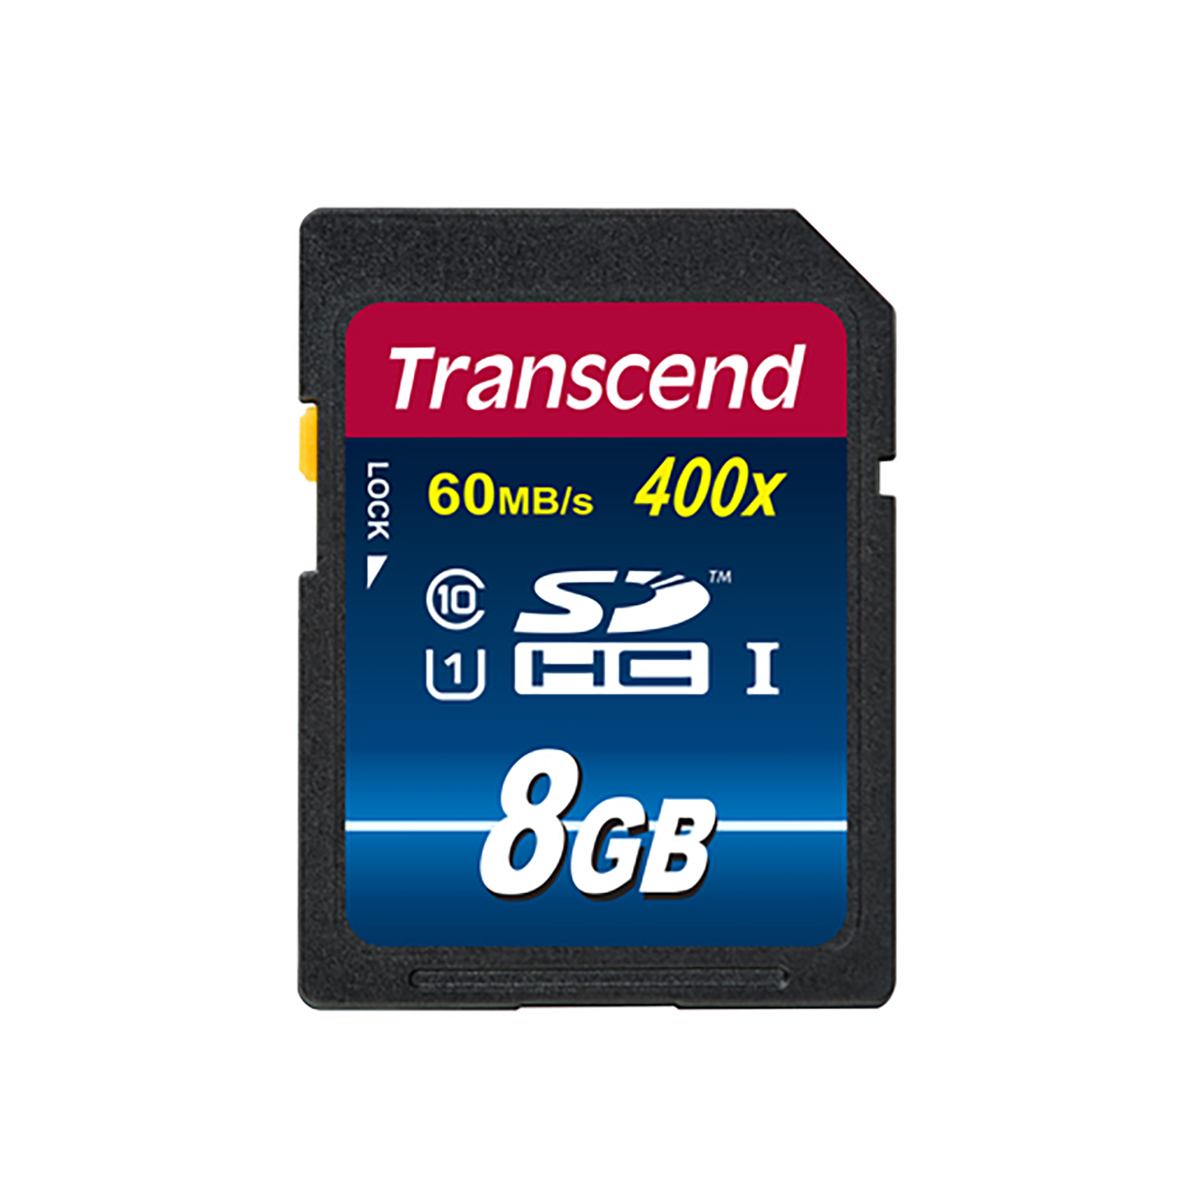 Transcend 8 GB SDHC Class10 UHS-1 400x